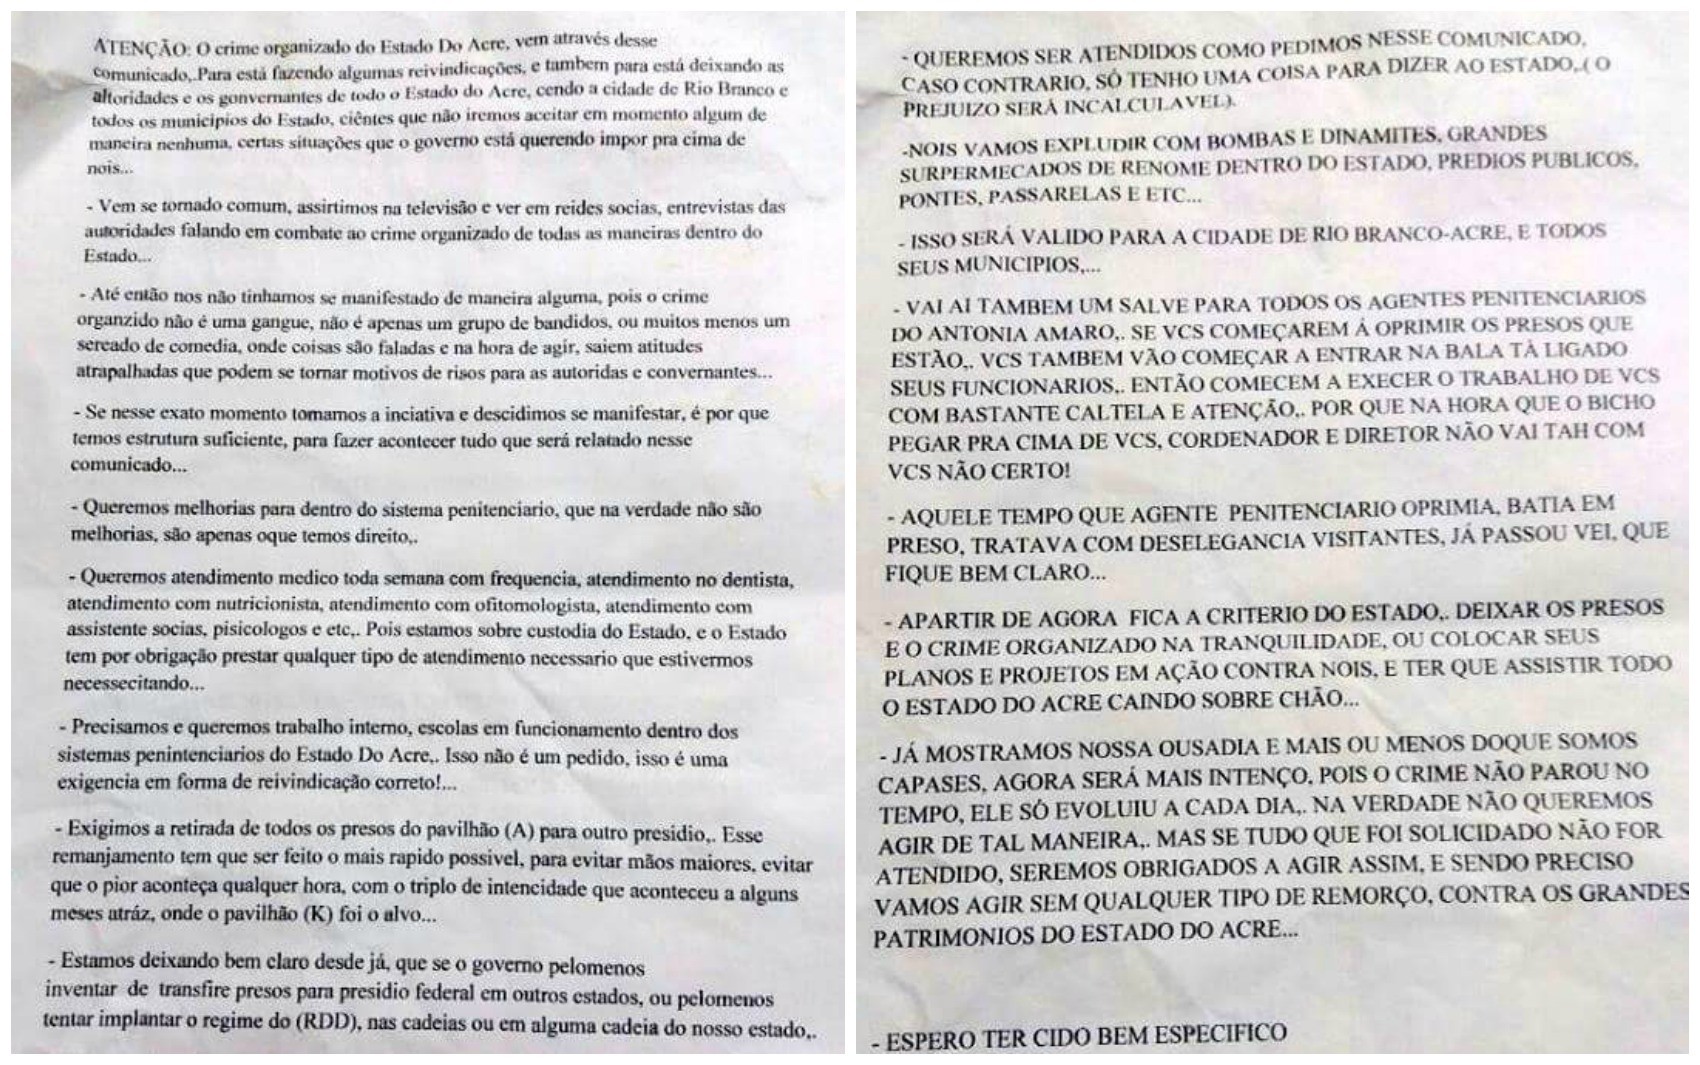 Carta foi encontrada próxima à sede da Defensoria Pública do Acre (Foto: Reprodução)